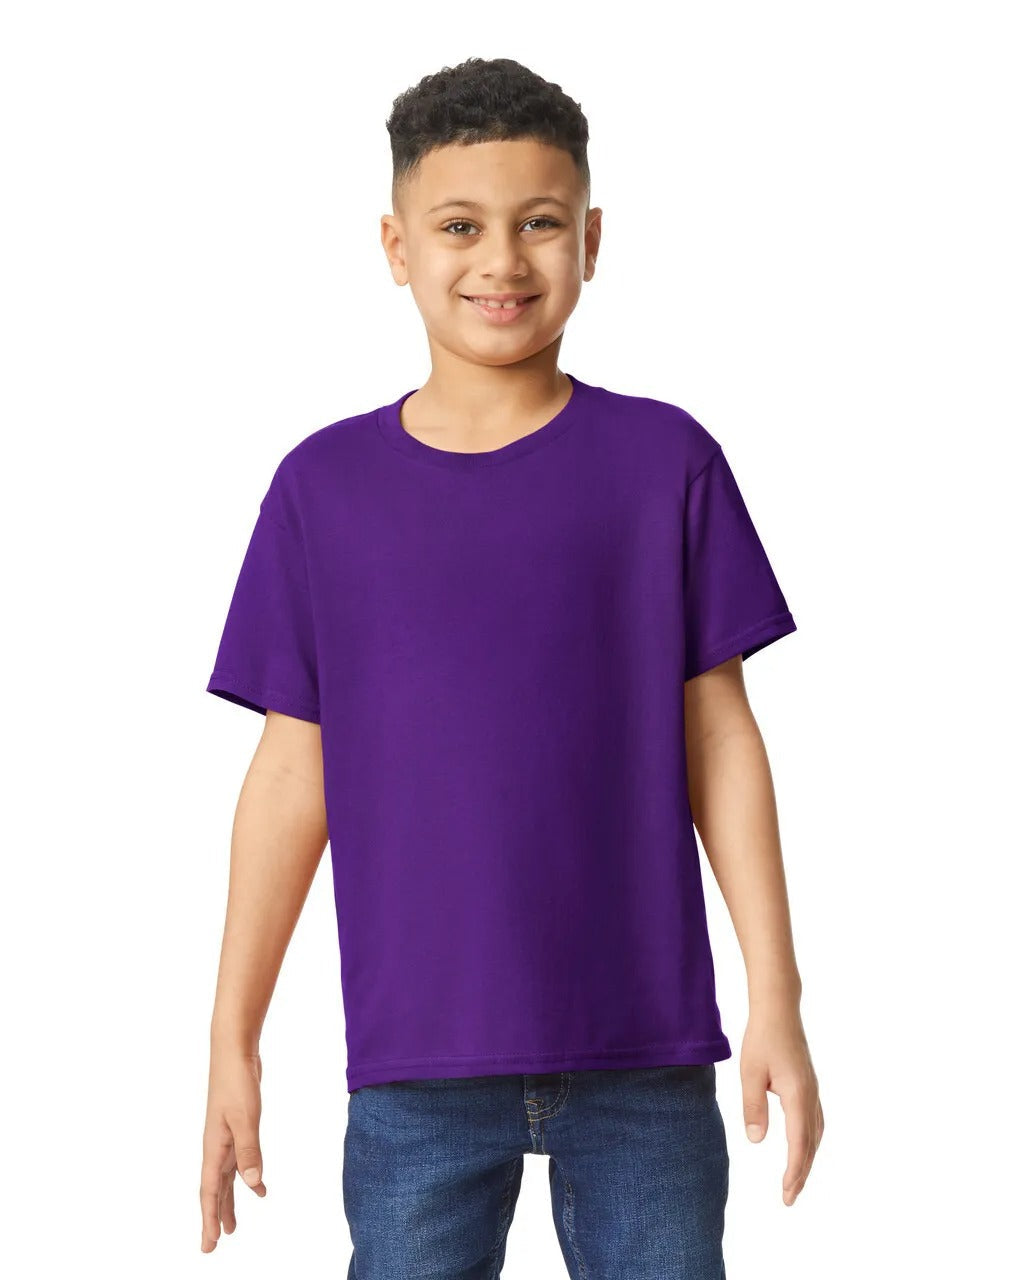 Kids Tshirt - Purple